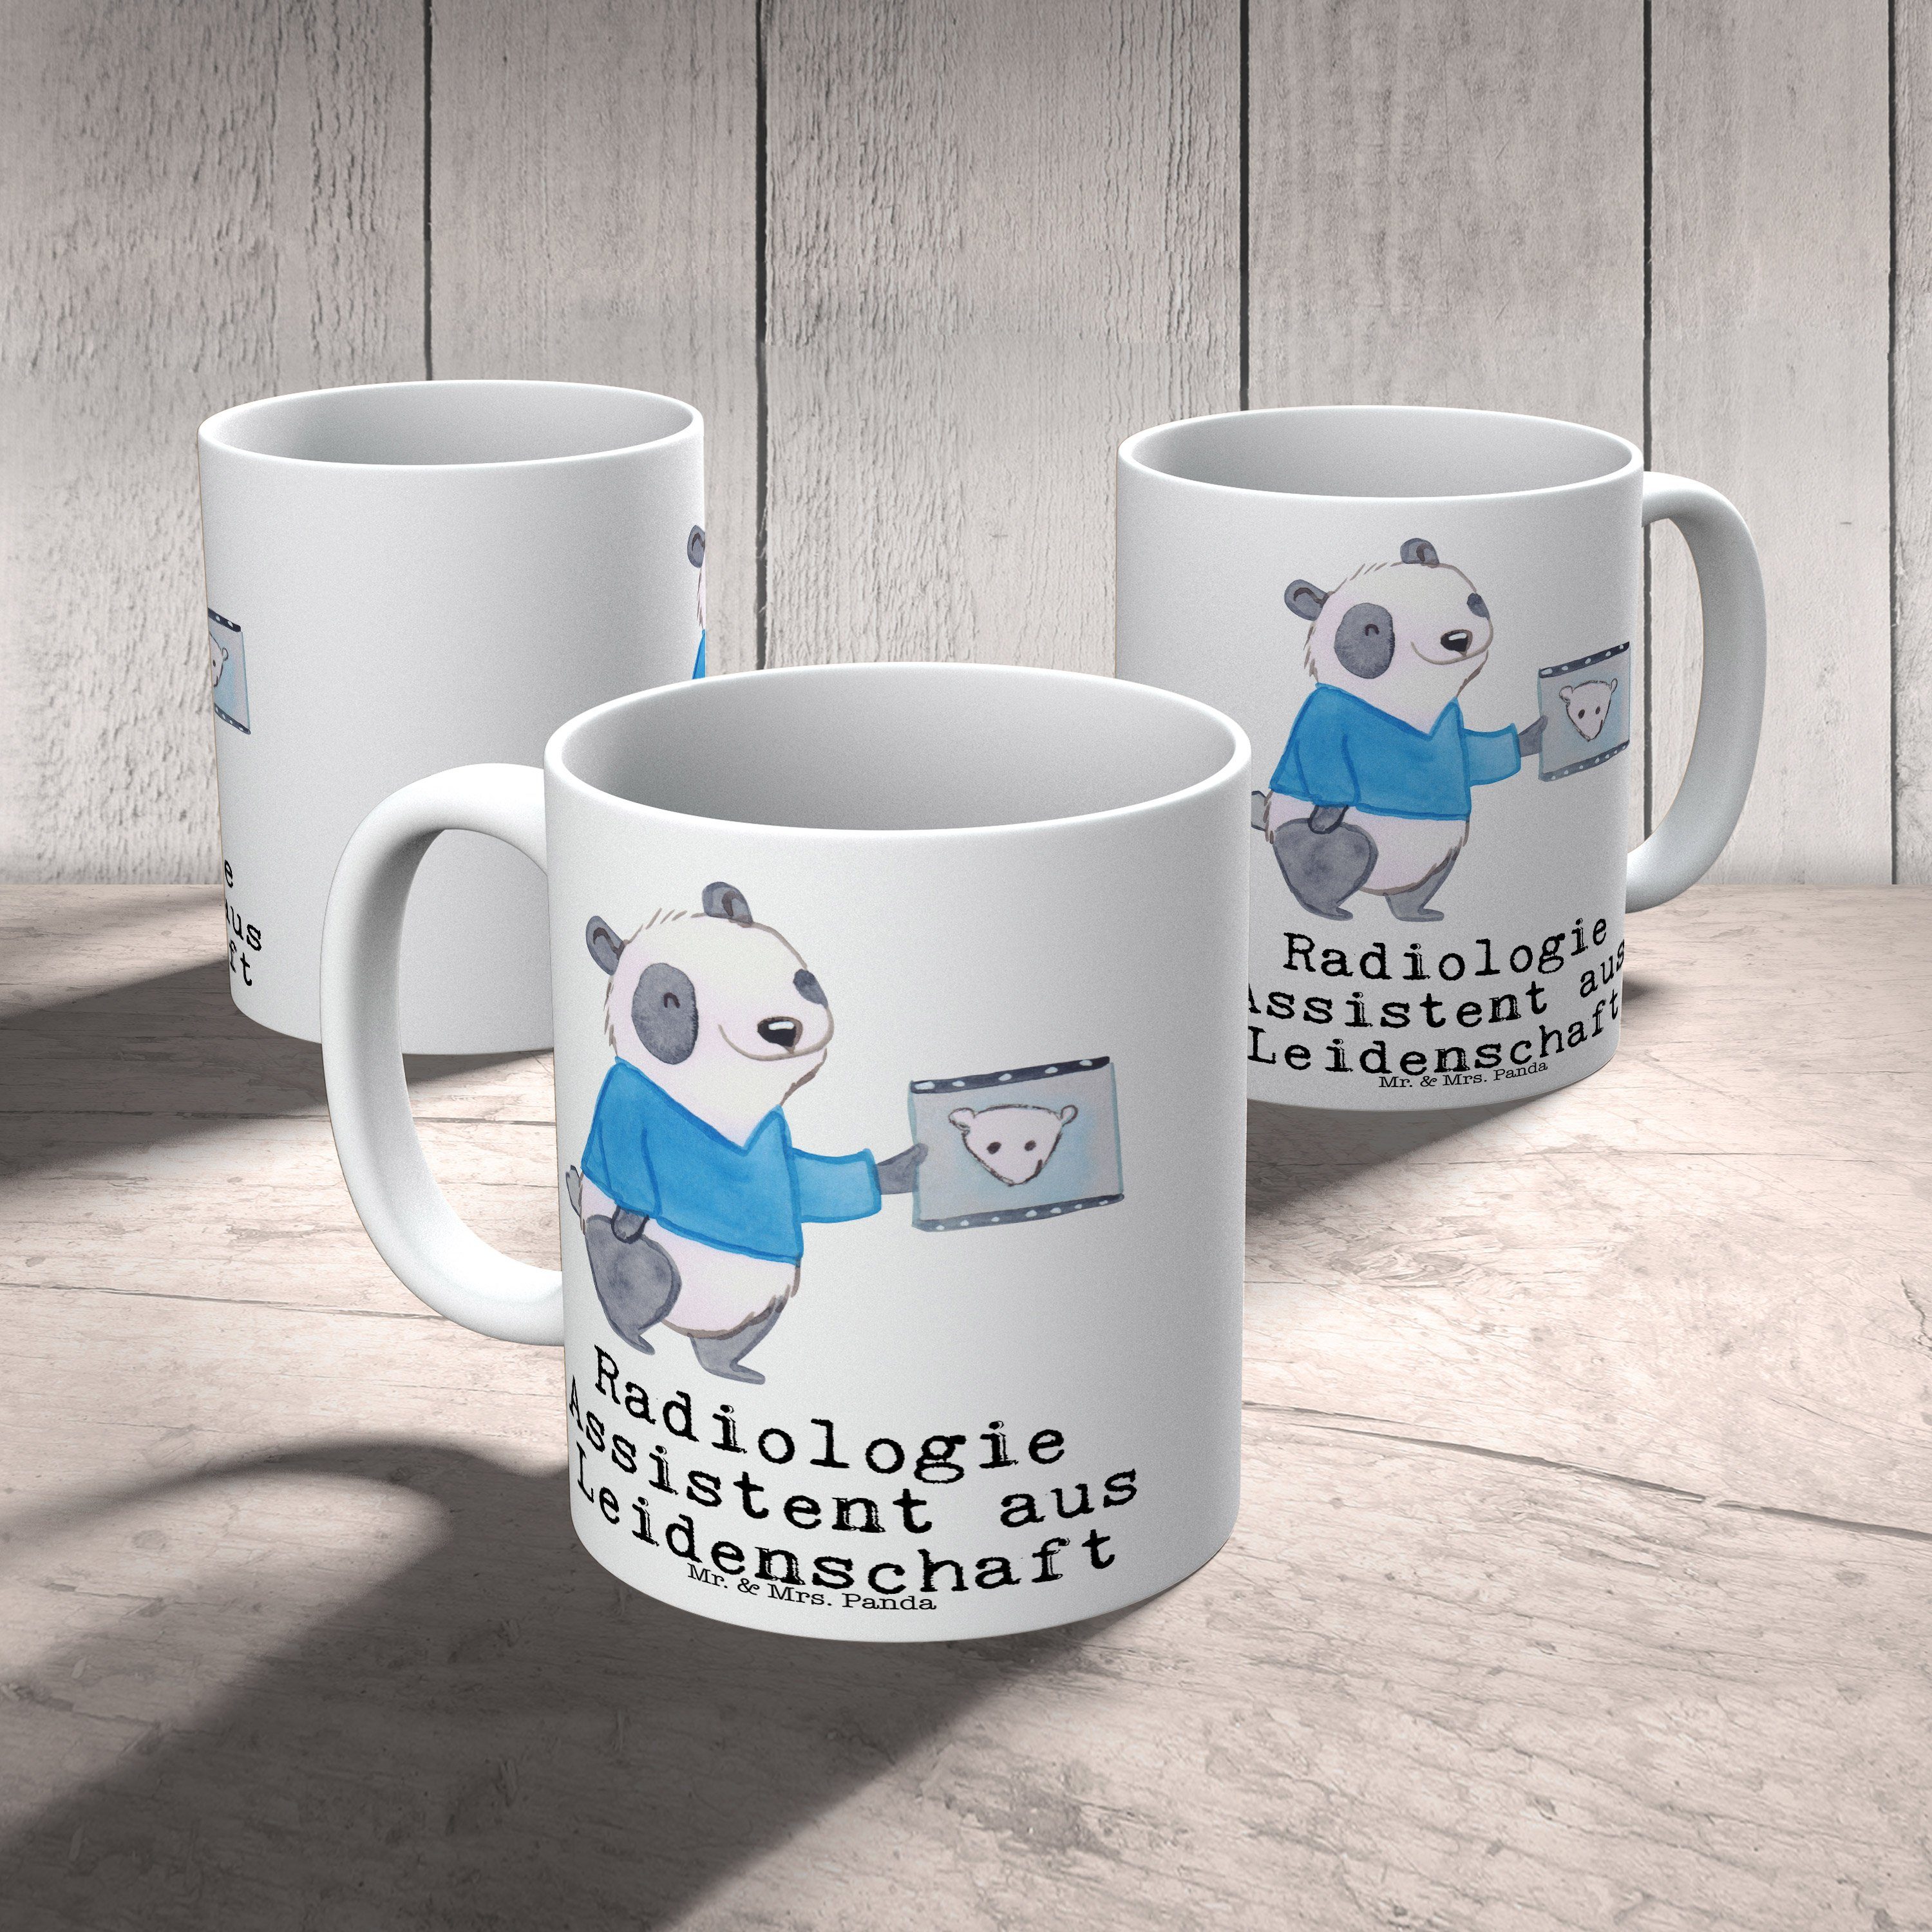 Mr. & Mrs. Panda Tasse aus Tasse, Assistent Kolle, - Leidenschaft Radiologie Weiß - Keramik Geschenk